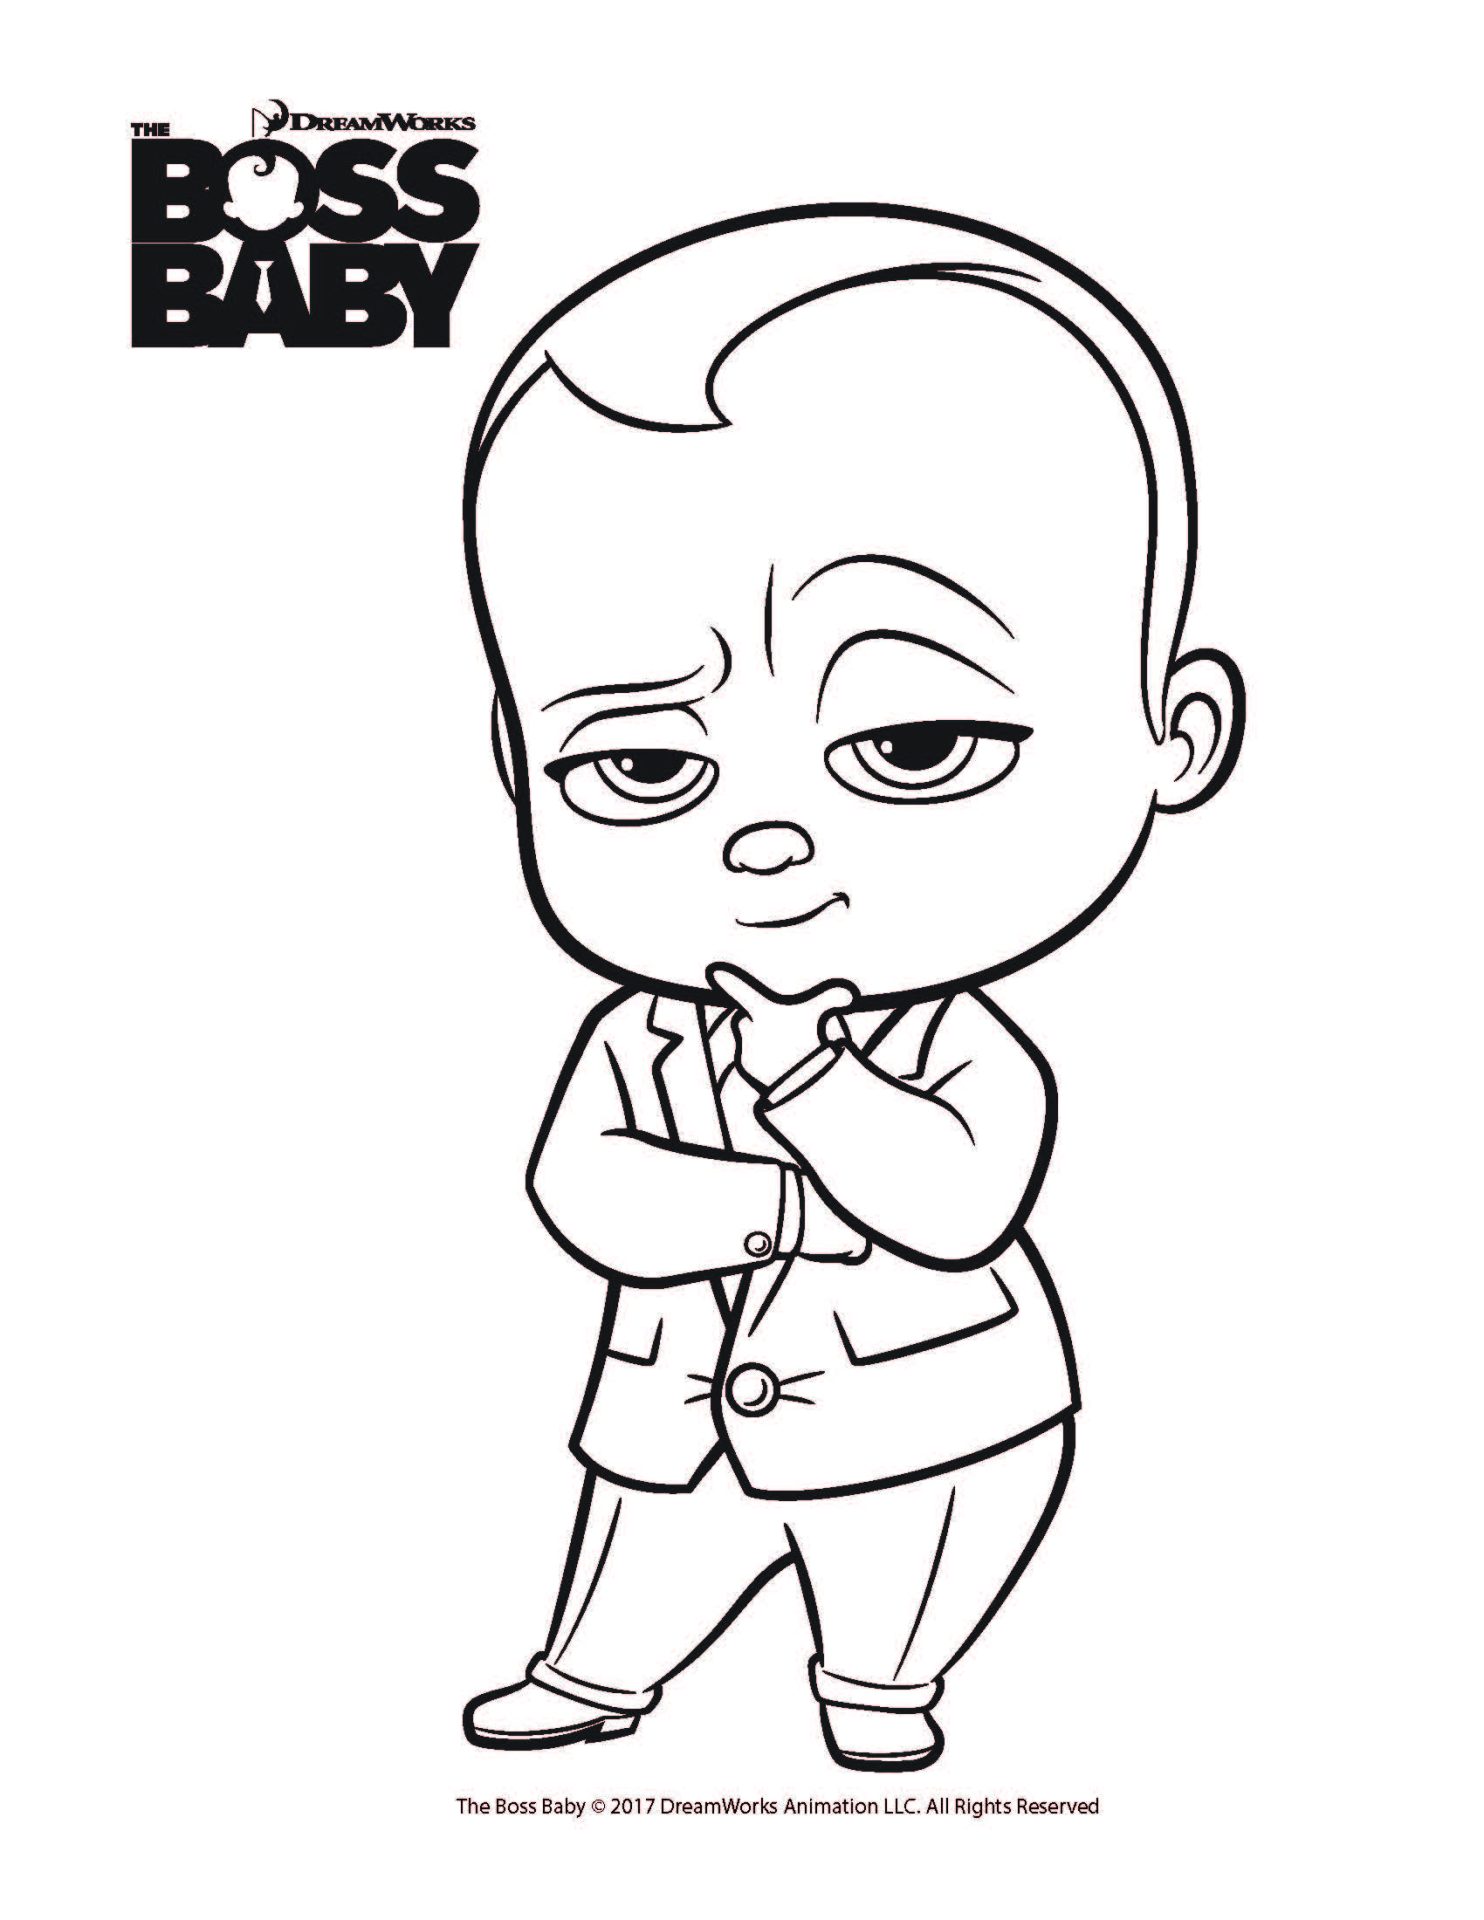 Share 67+ boss baby sketch best - in.eteachers